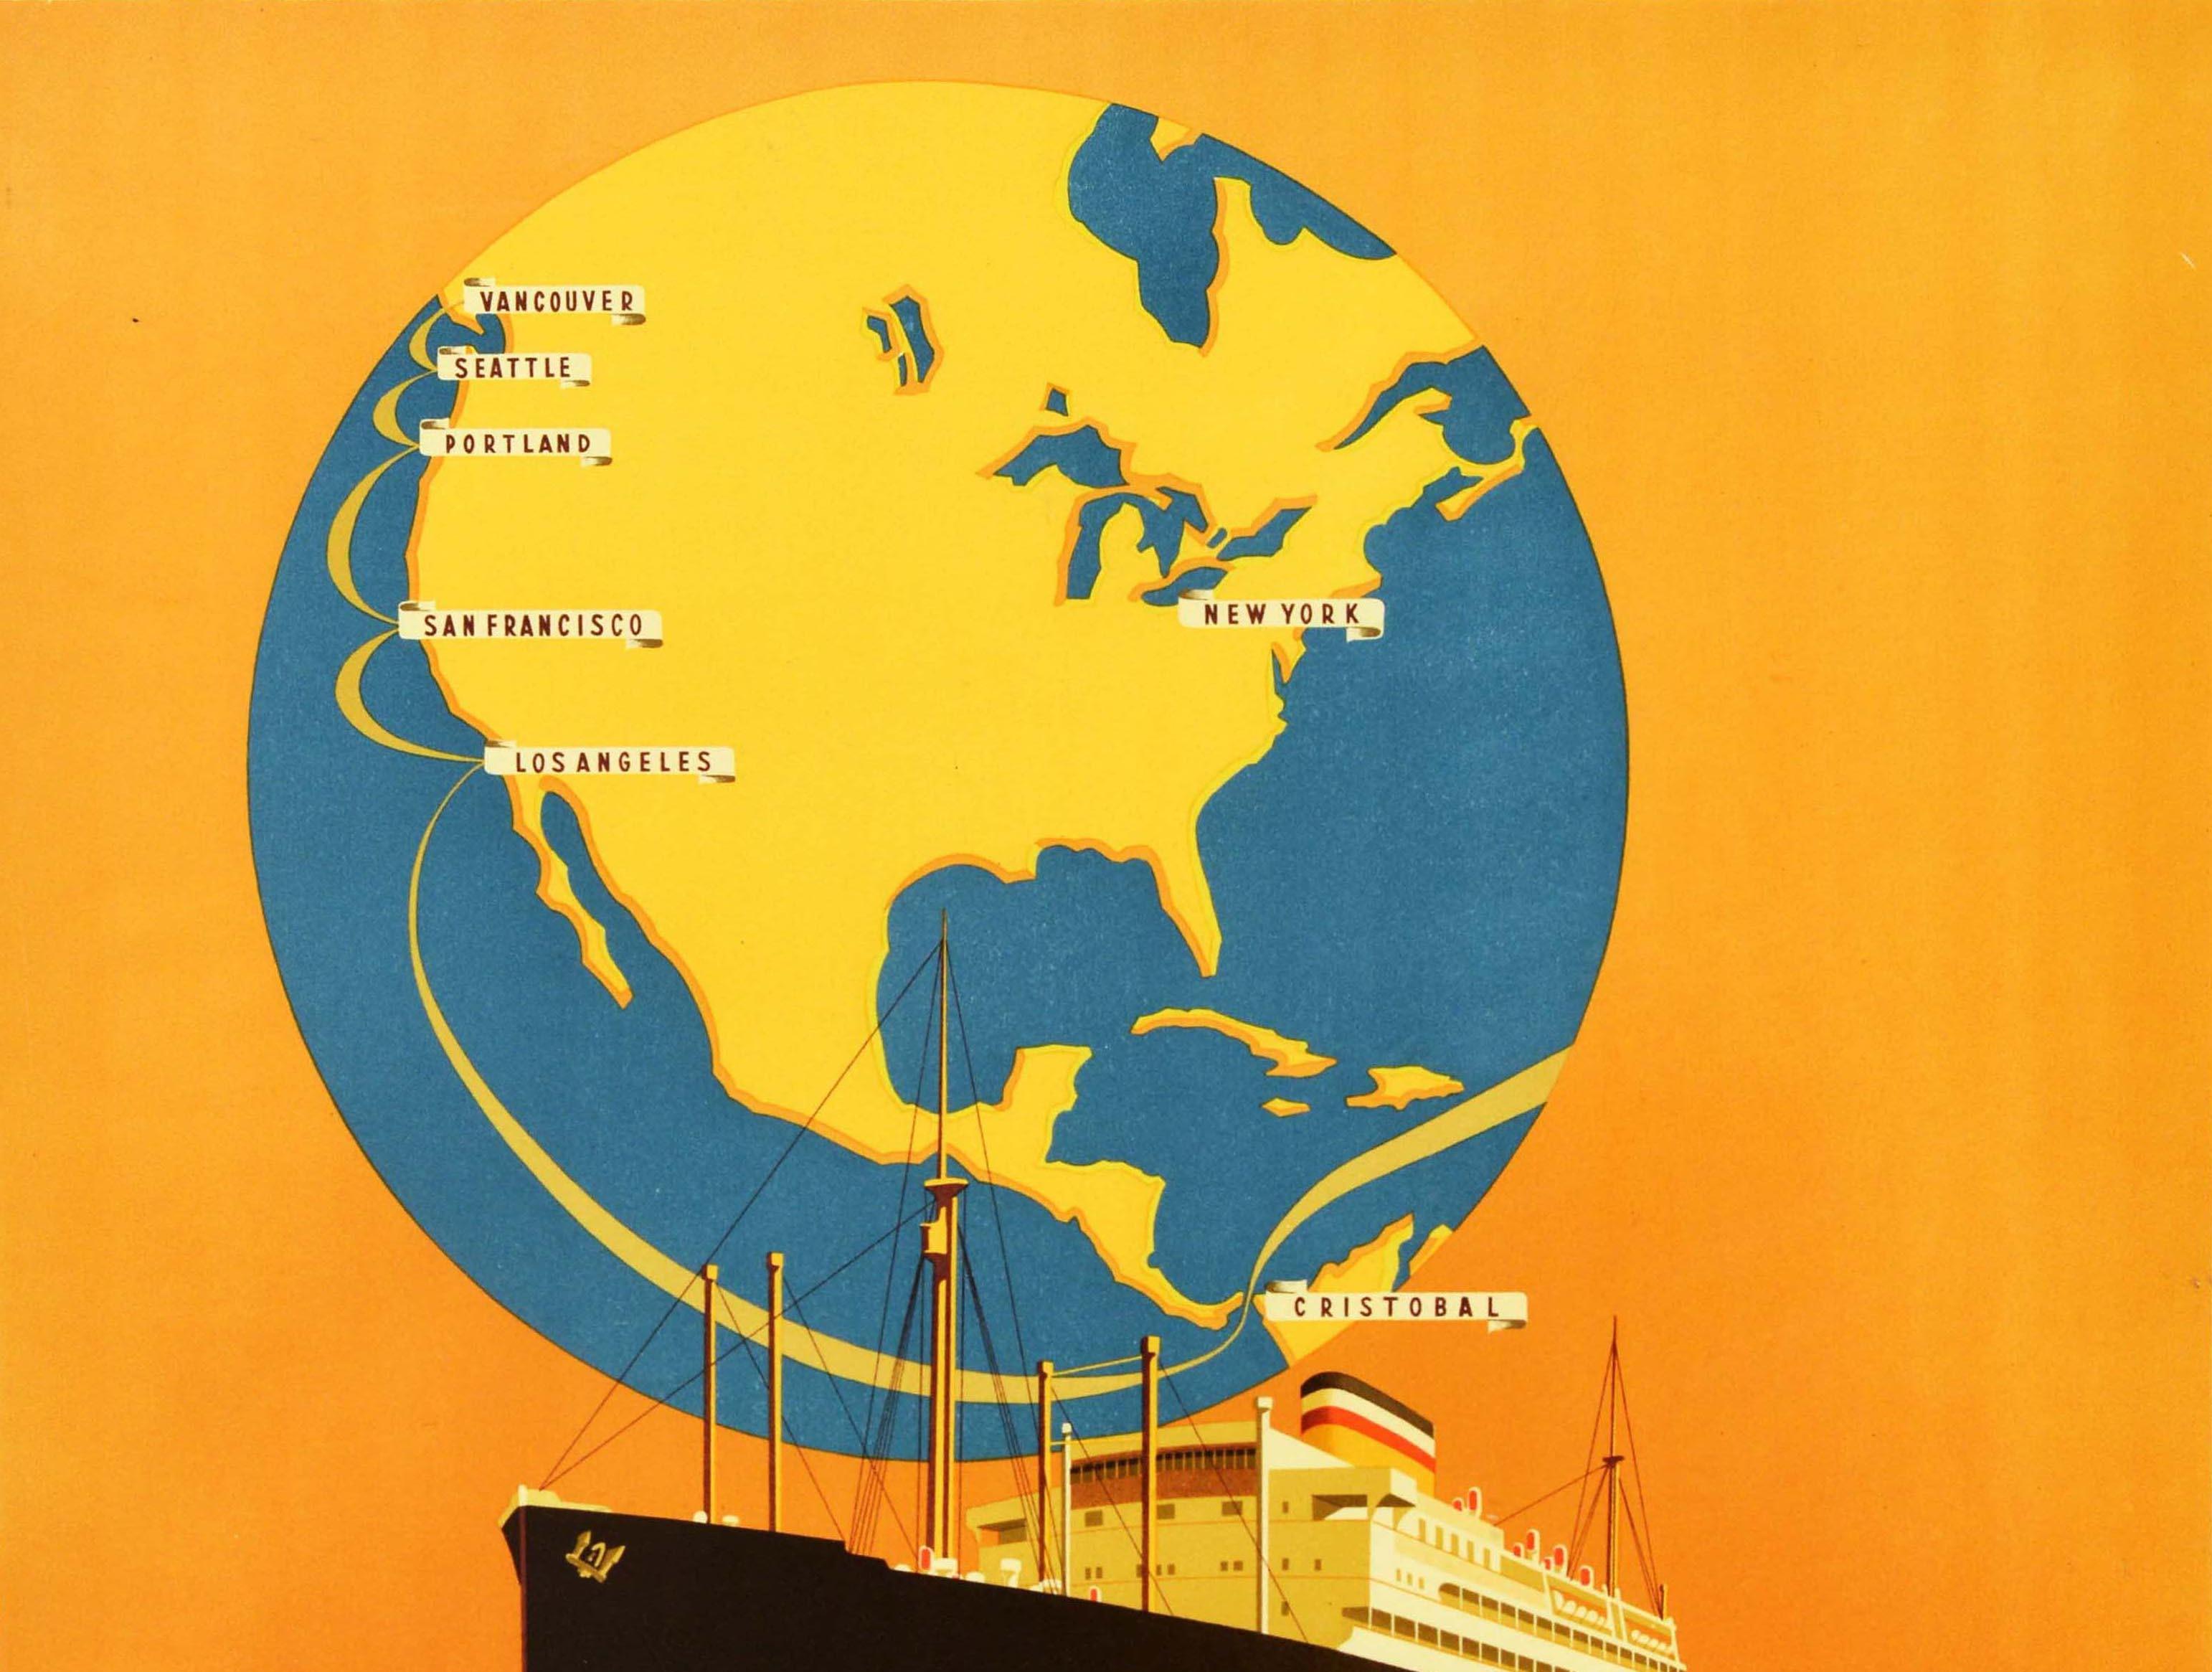 Original Vintage-Reiseplakat Werbung Hamburg Amerika Linie Kreuzfahrten direkt nach Los Angeles San Francisco mit einem eleganten Ozeandampfer Segeln auf See vor einem Globus der Welt mit New York und die Städtenamen auf der Route über die Karte von